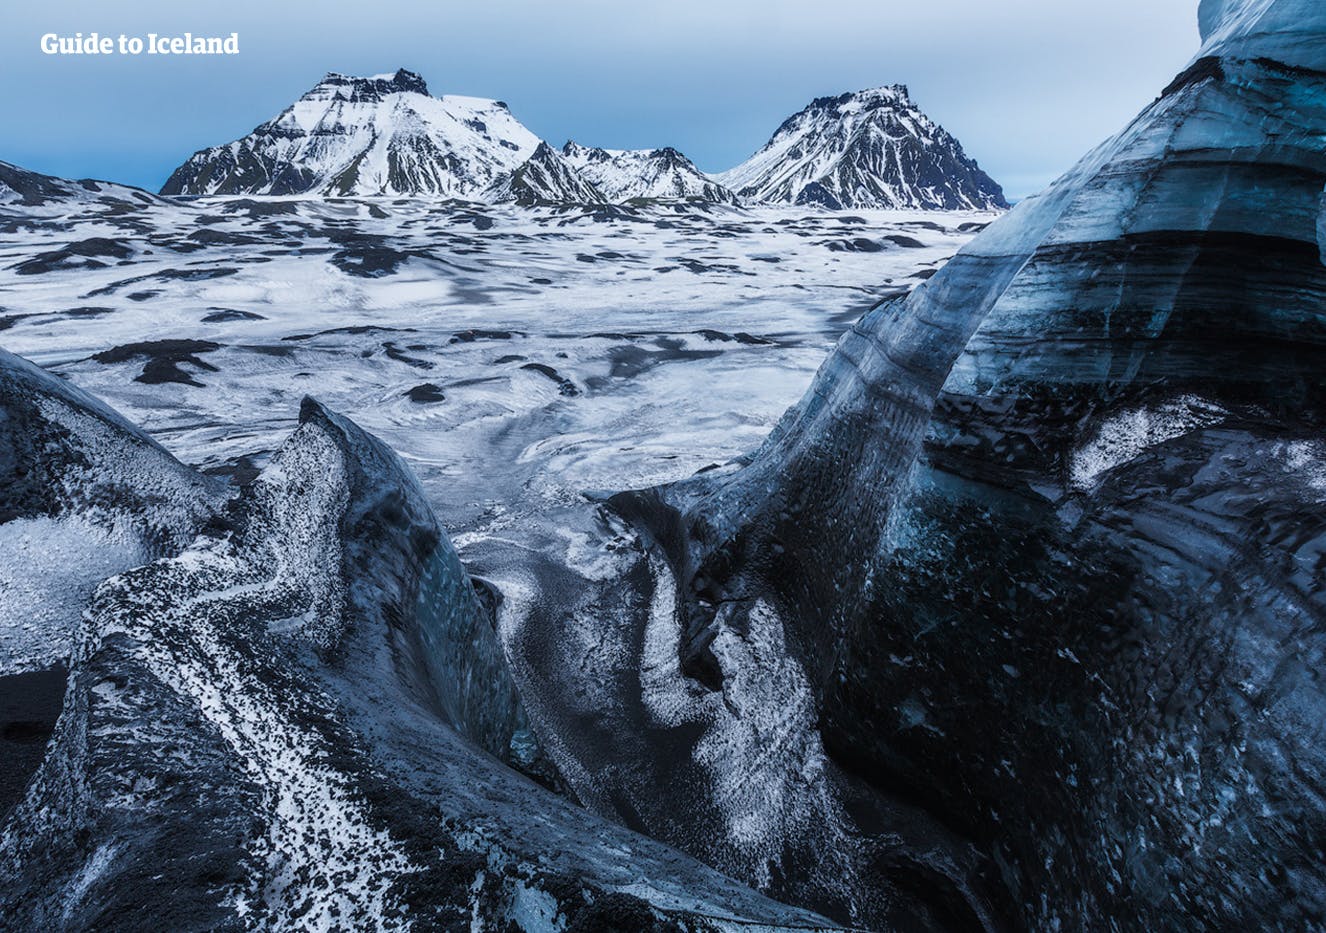 火山灰の層が重なったミルダルスヨークル氷河はアイスランドの歴史を物語っている